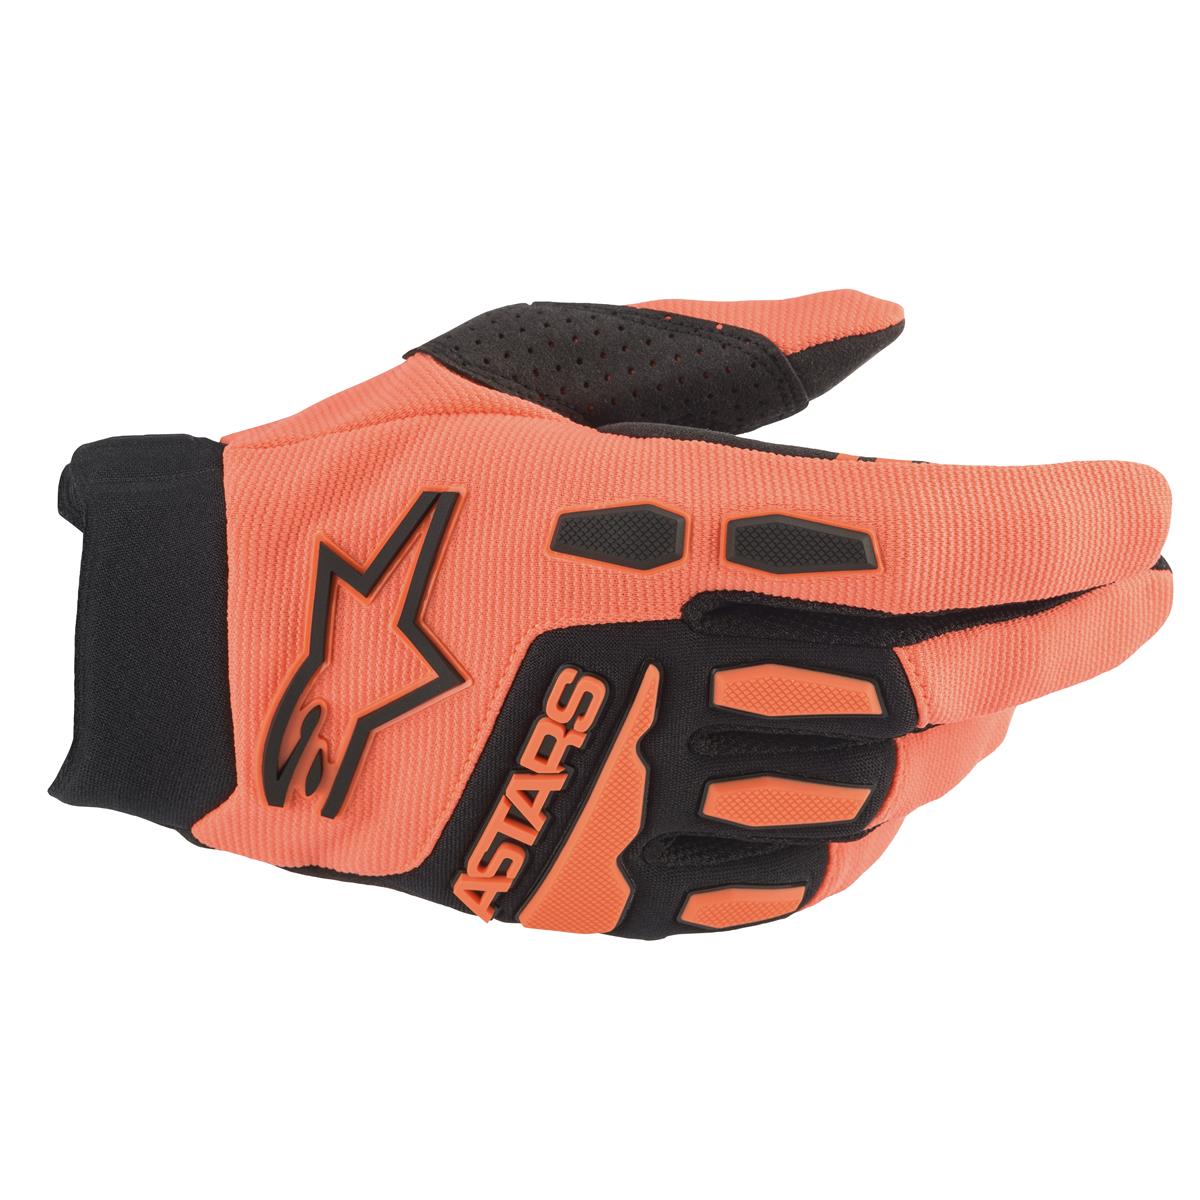 Alpinestars Gloves Full Bore Orange/Black